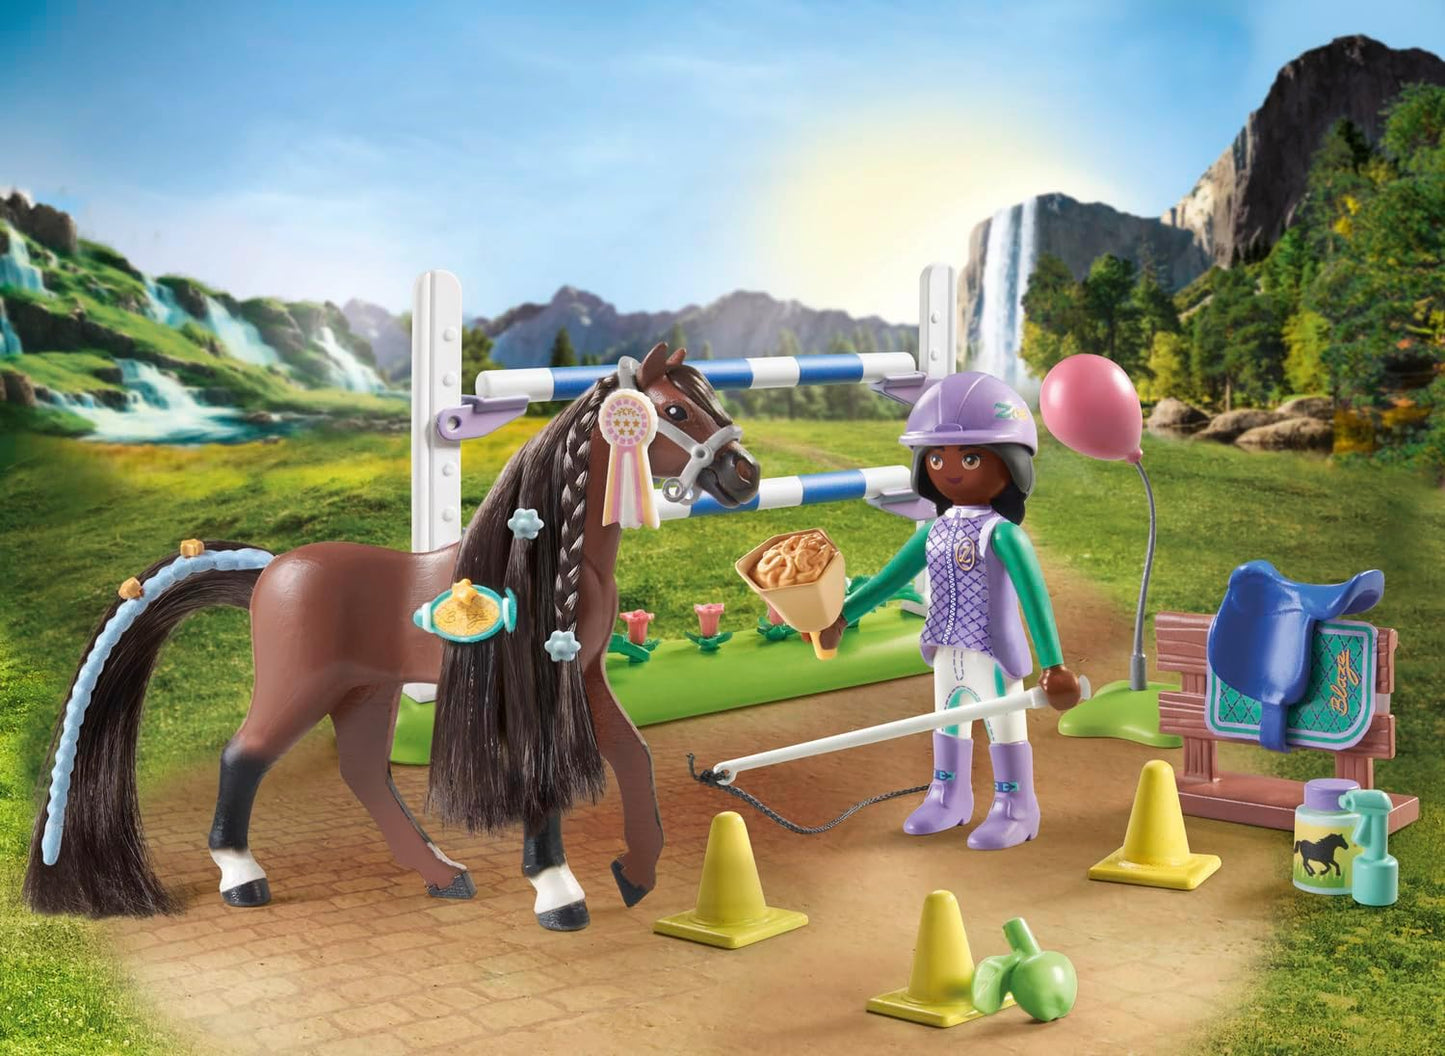 Playmobil 71355 Horses of Waterfall Jumping Arena com Zoe e Blaze, treinamento para o campeonato com recompensas, encenação divertida e imaginativa, conjuntos de jogos sustentáveis adequados para crianças a partir de 5 anos